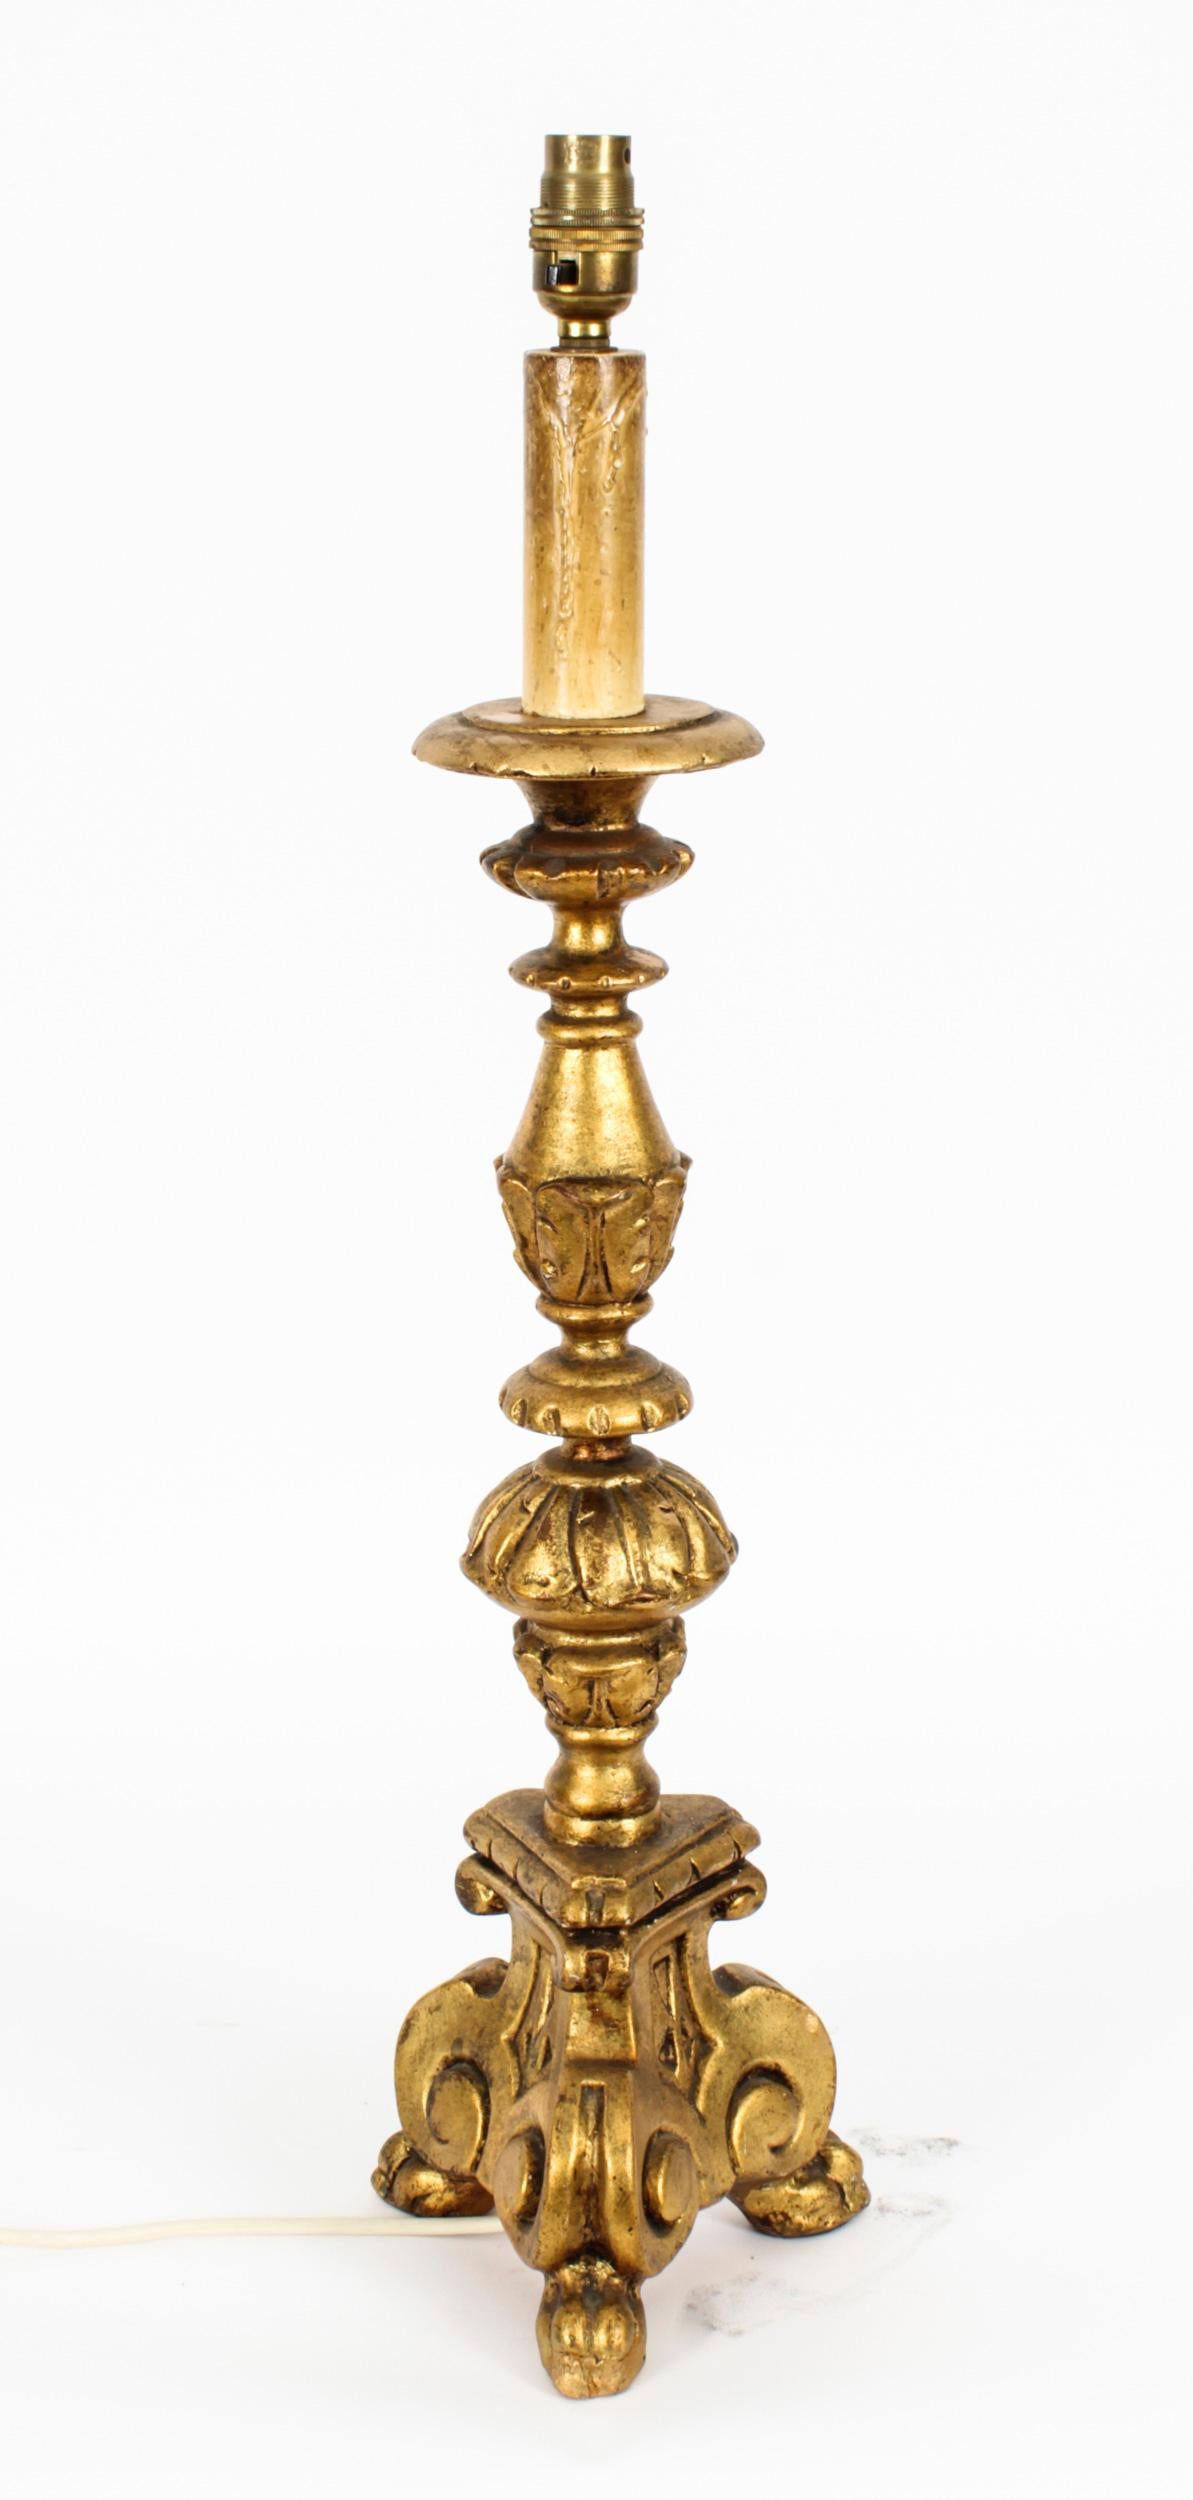 Il s'agit d'une splendide lampe baroque dorée italienne vintage, datant du milieu du 20ème siècle.

Cette opulente lampe de table présente une tête de bougie avec une tige décorée d'un feuillage orné classique sous la forme de splendides feuilles